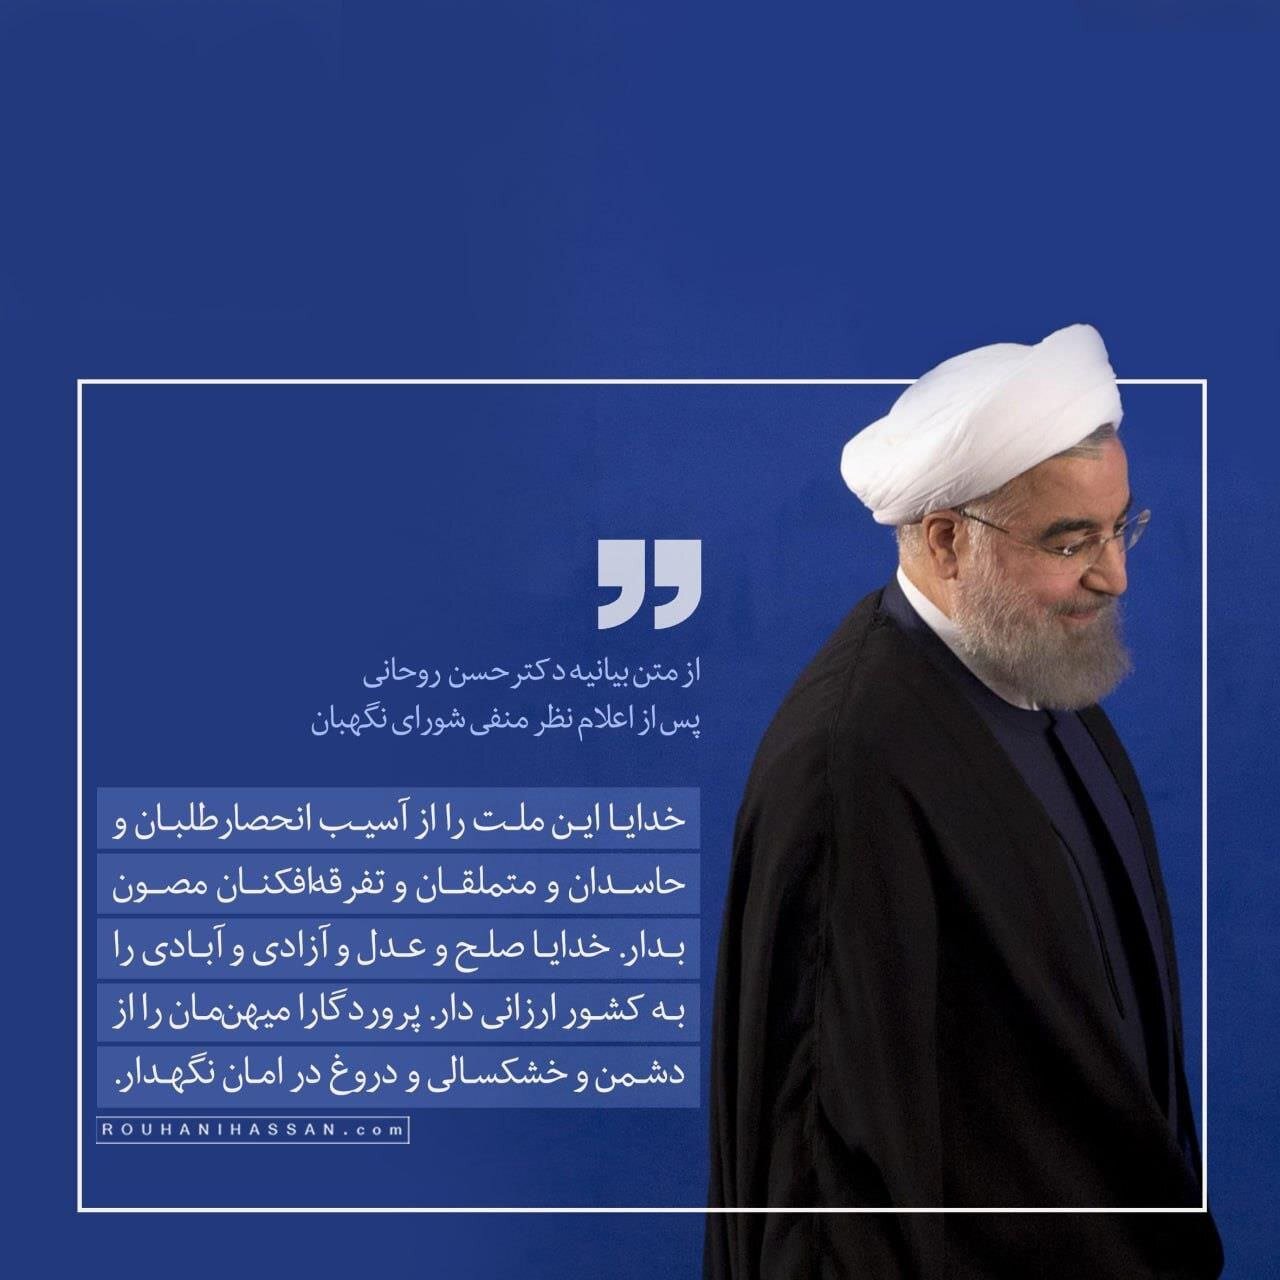 دعای ویژه حسن روحانی بعد از ردصلاحیت از سوی شورای نگهبان